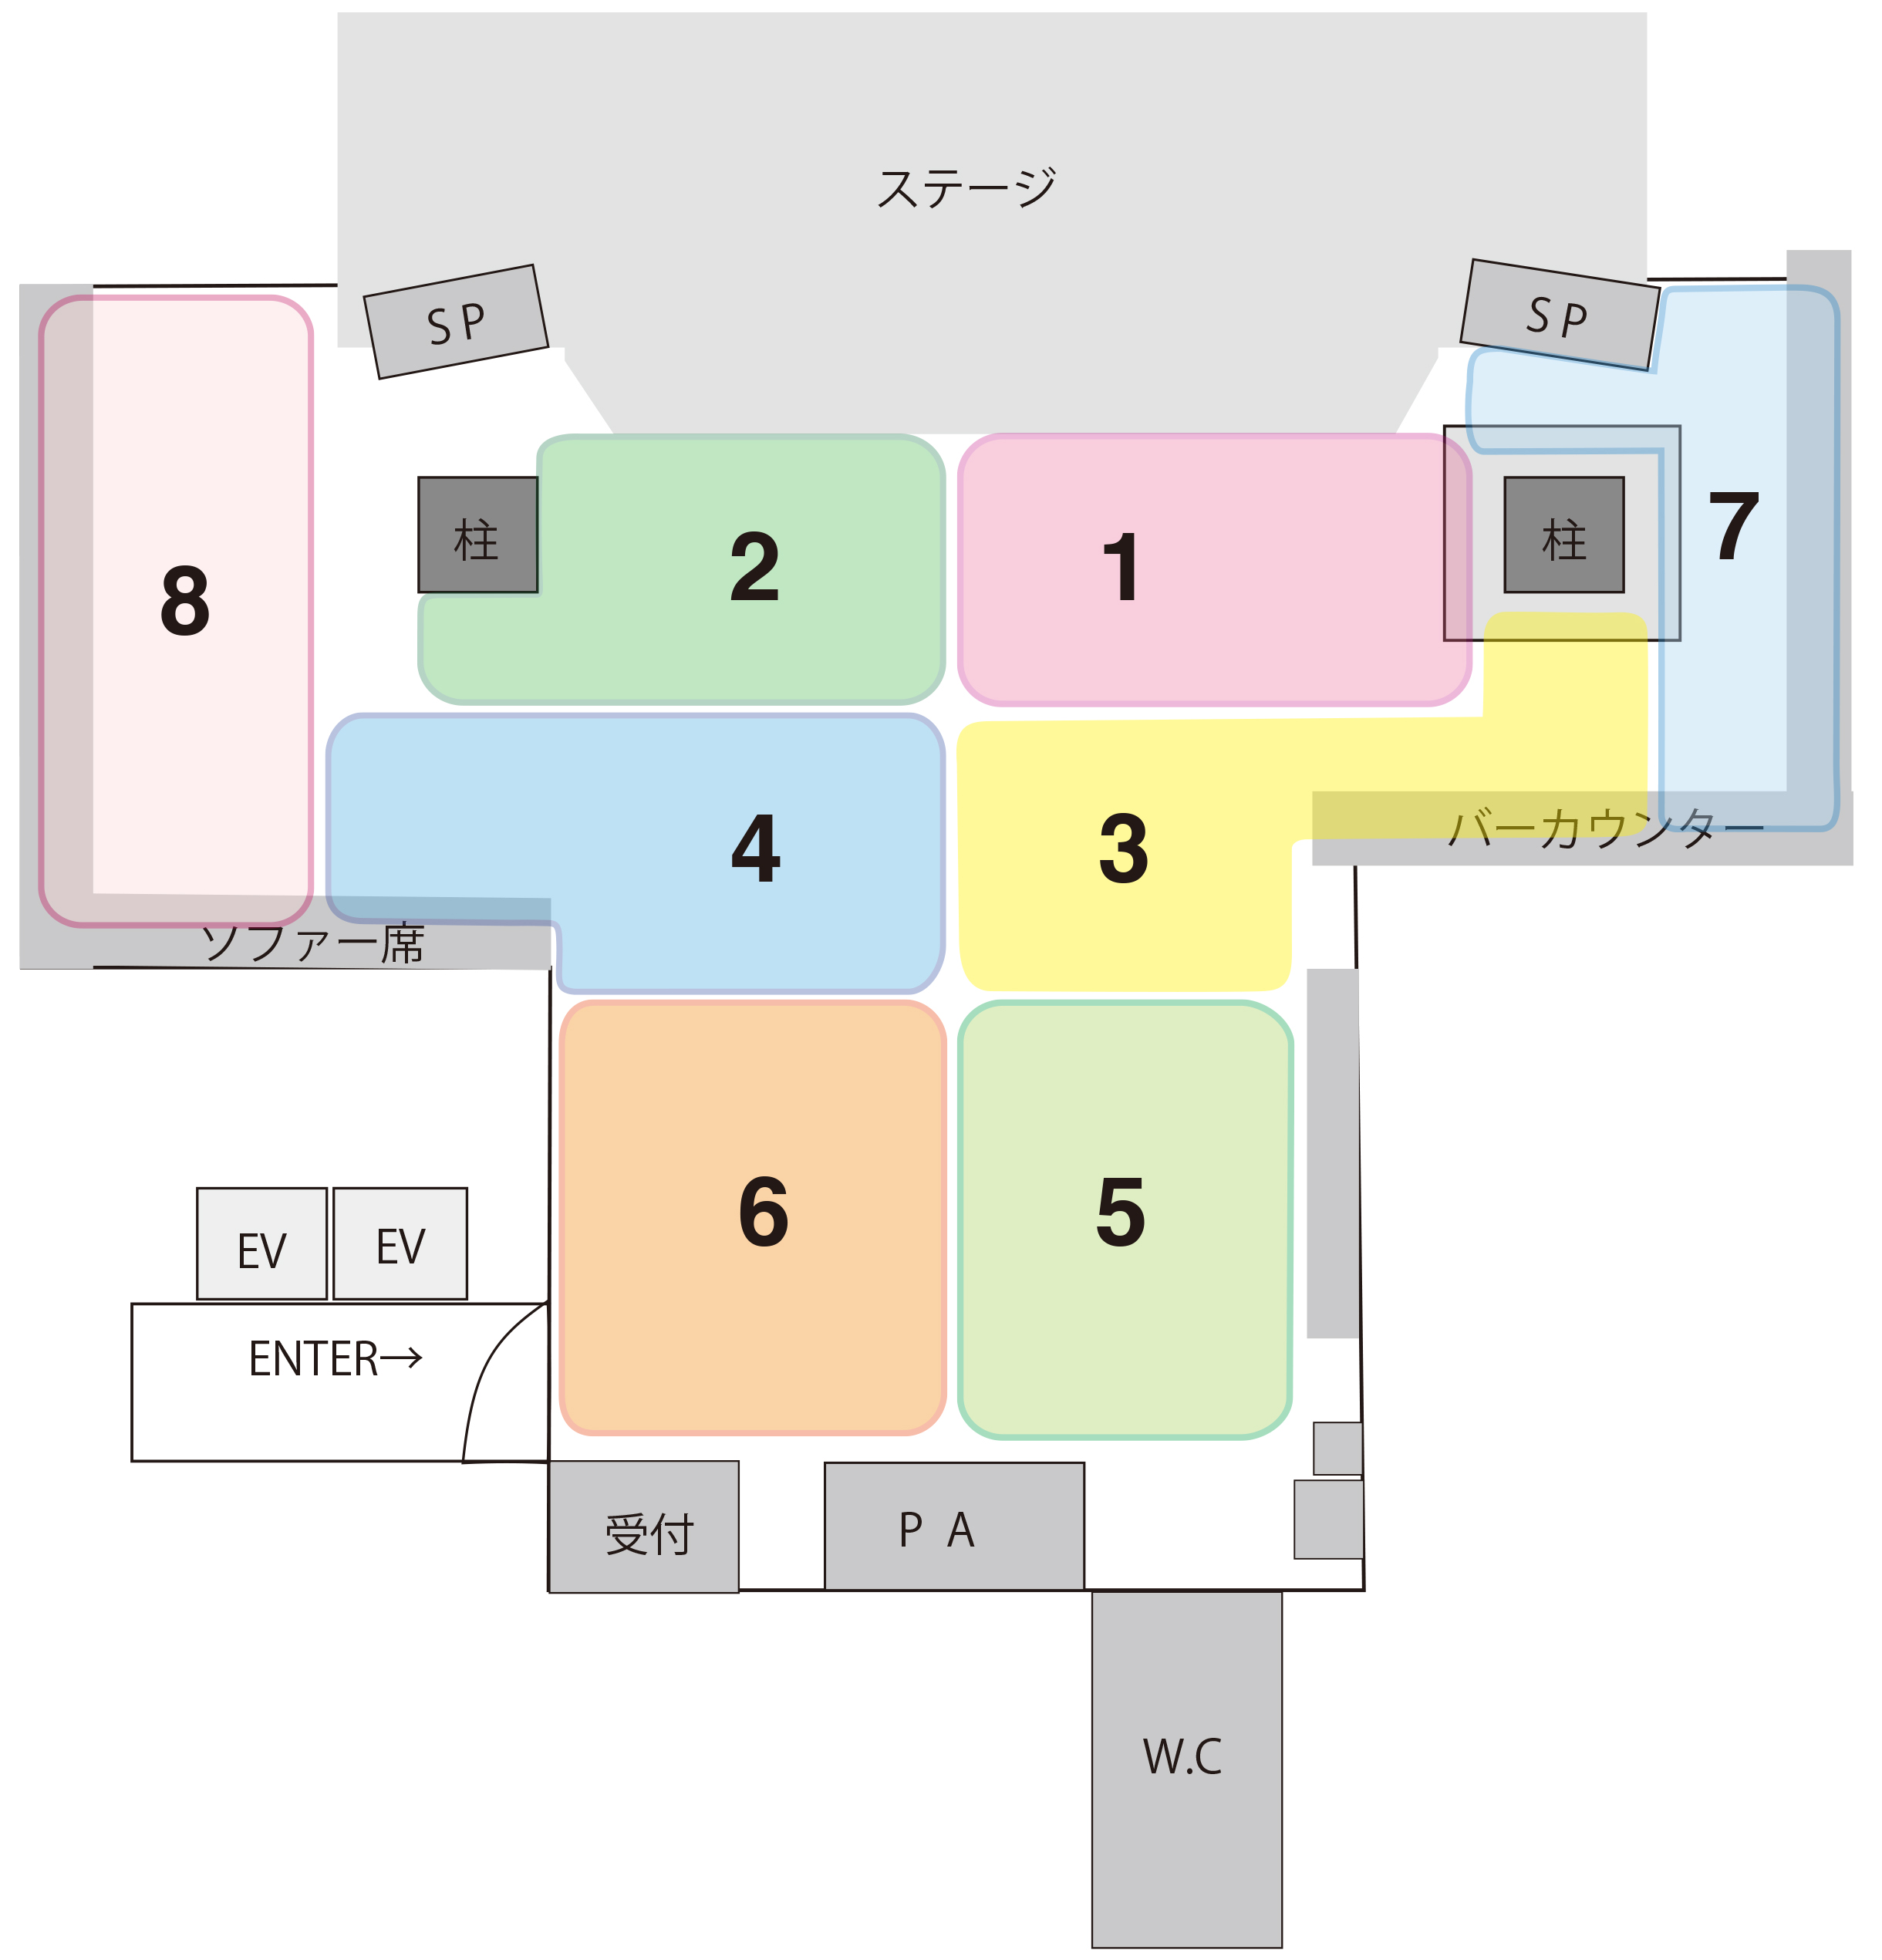 座席制とご入場方法について 京都のライブハウス ライブスポットラグ